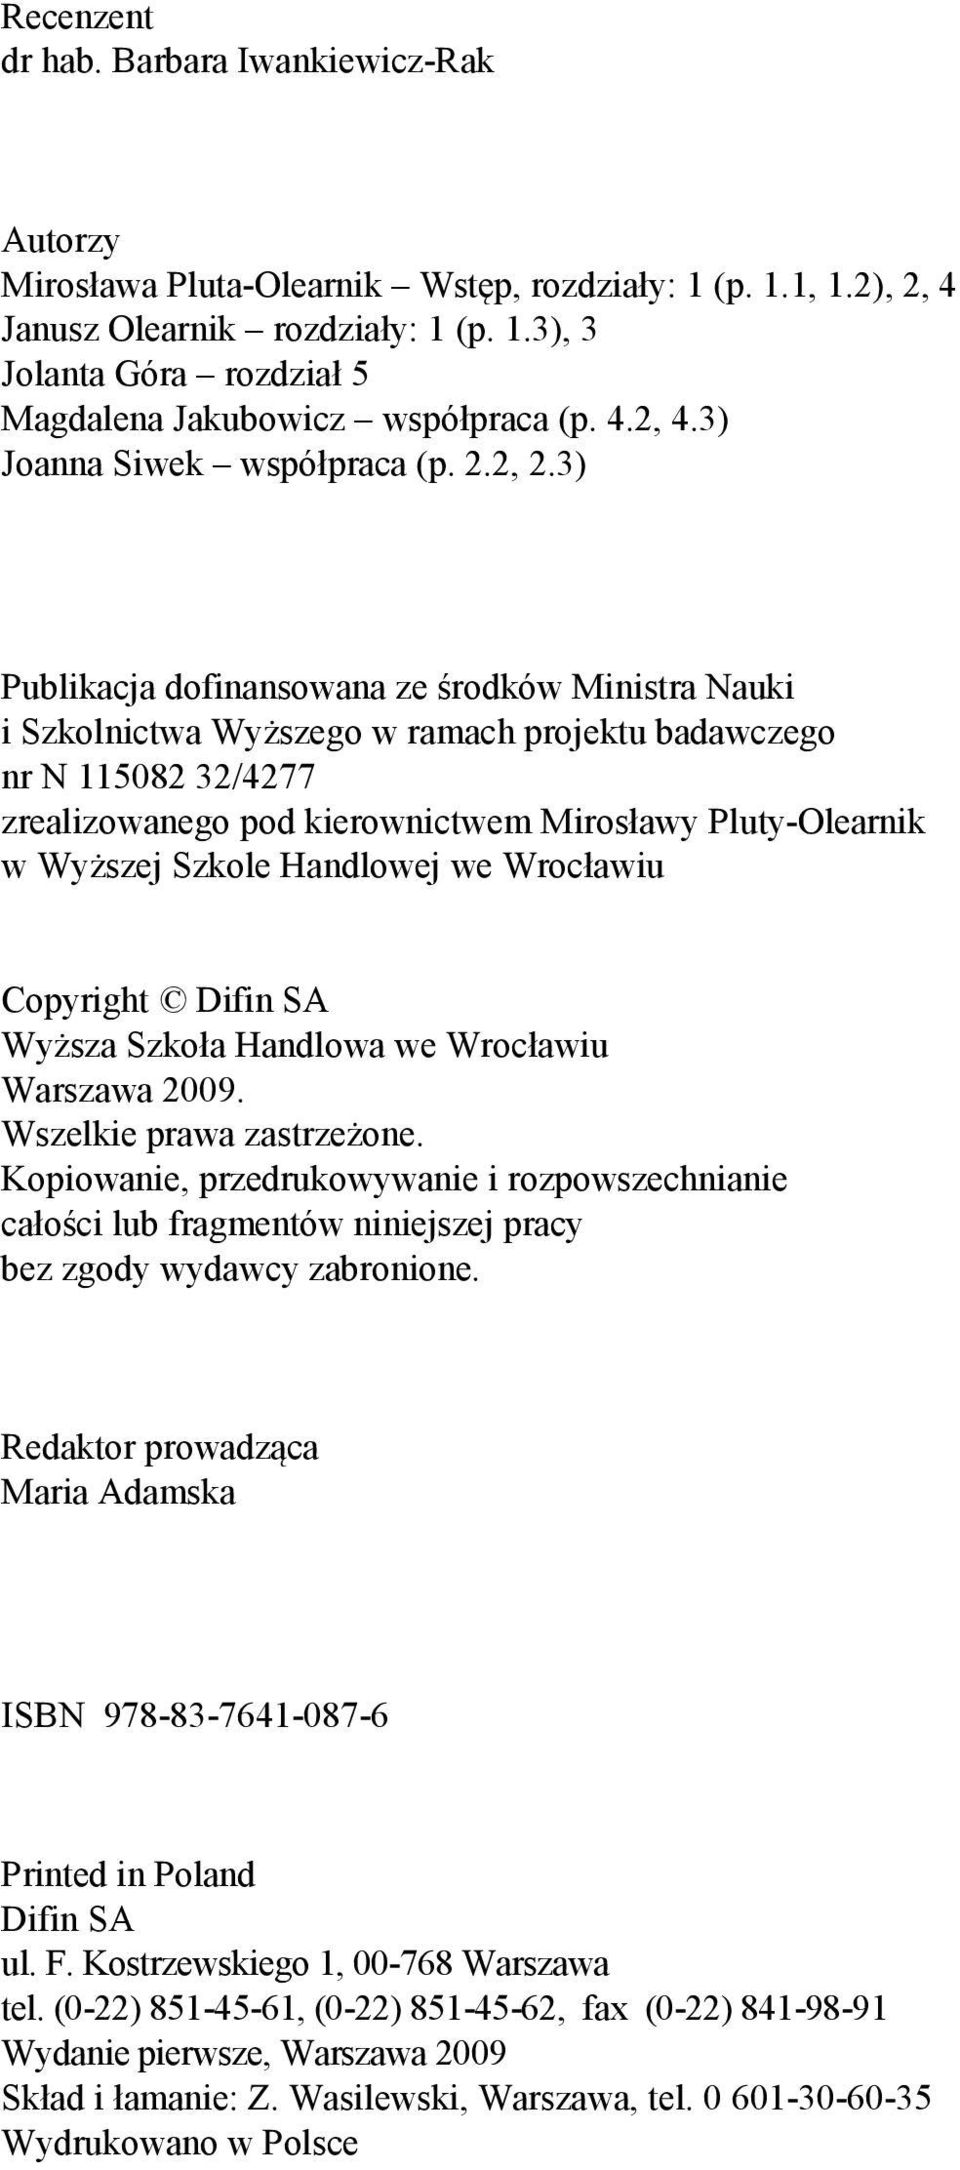 3) Publikacja dofinansowana ze środków Ministra Nauki i Szkolnictwa Wyższego w ramach projektu badawczego nr N 115082 32/4277 zrealizowanego pod kierownictwem Mirosławy Pluty-Olearnik w Wyższej